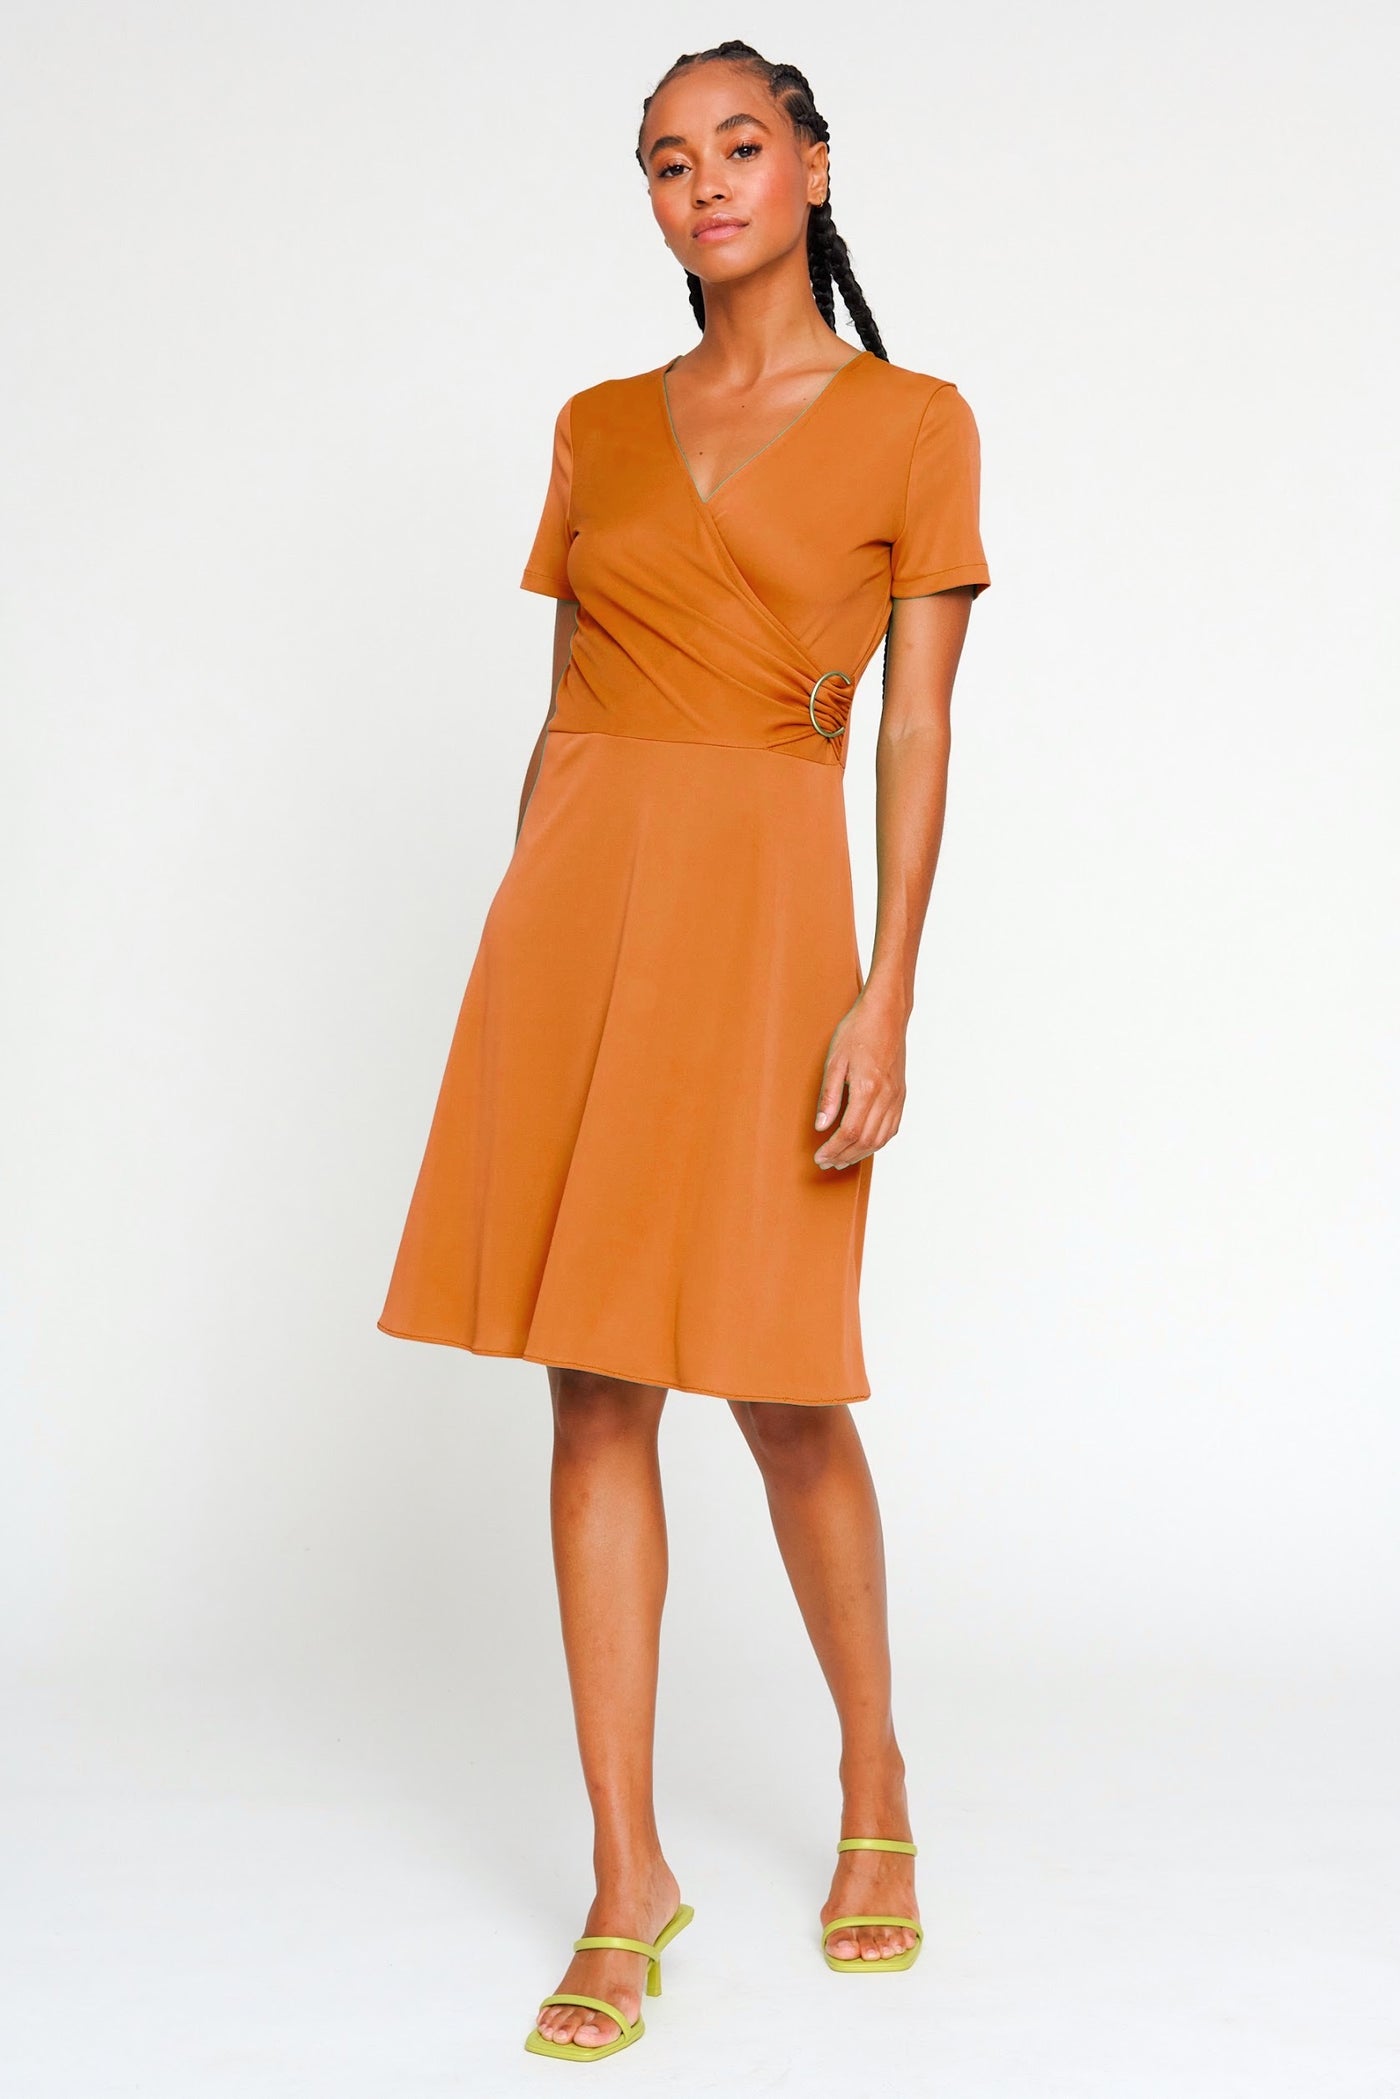 Orange V-Neck Wrap Style Short Sleeve Dress With Buckle Detailing